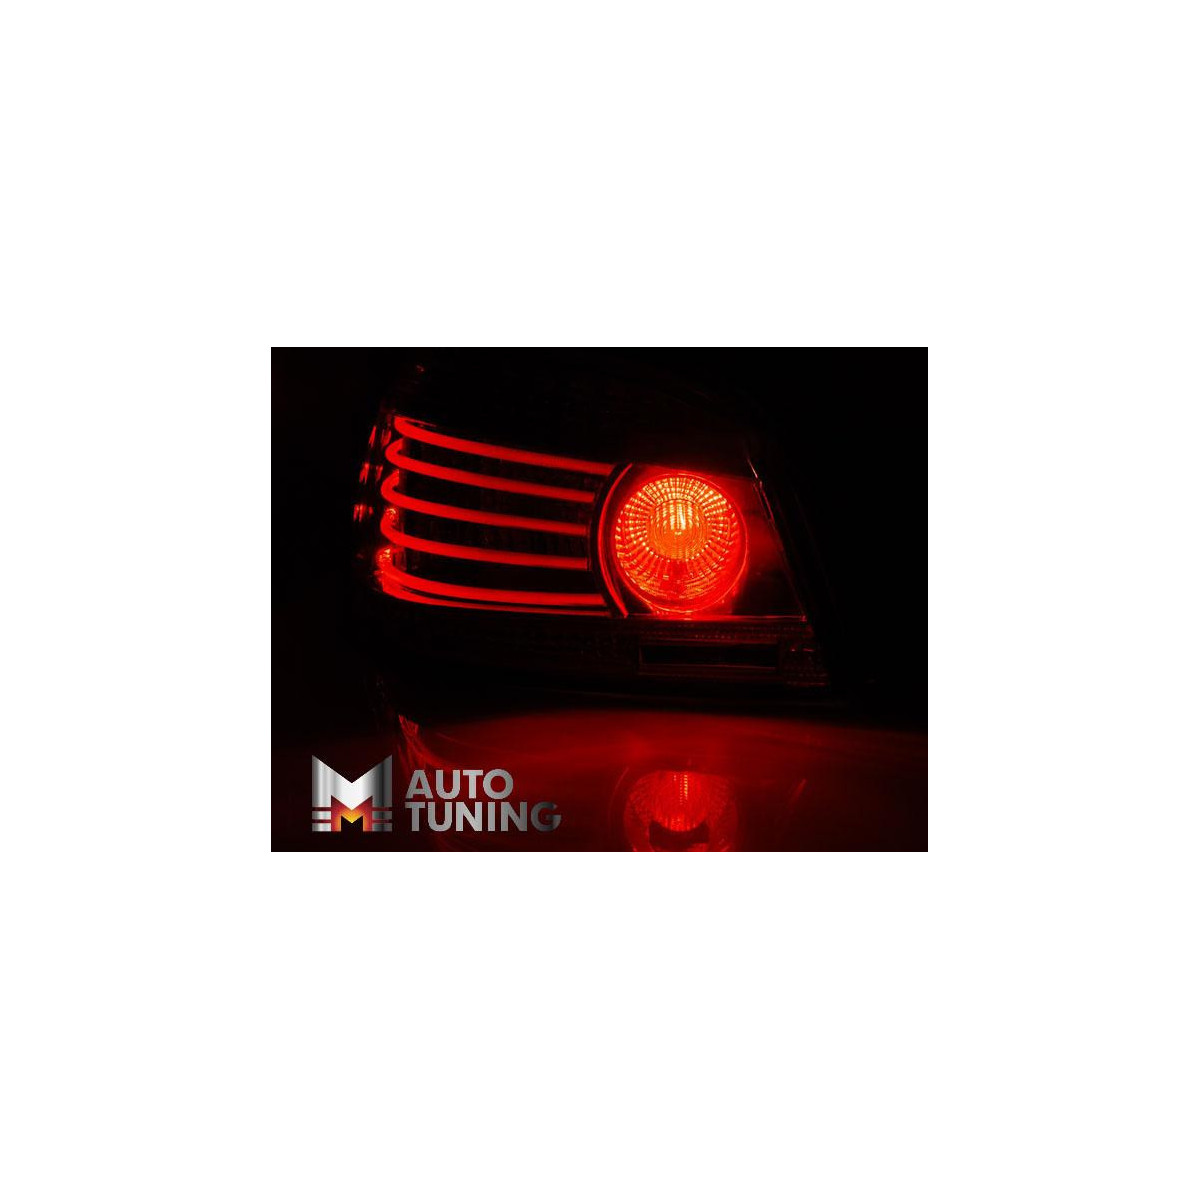 LAMPY BMW E60 07.03-07 RED SMOKE LED